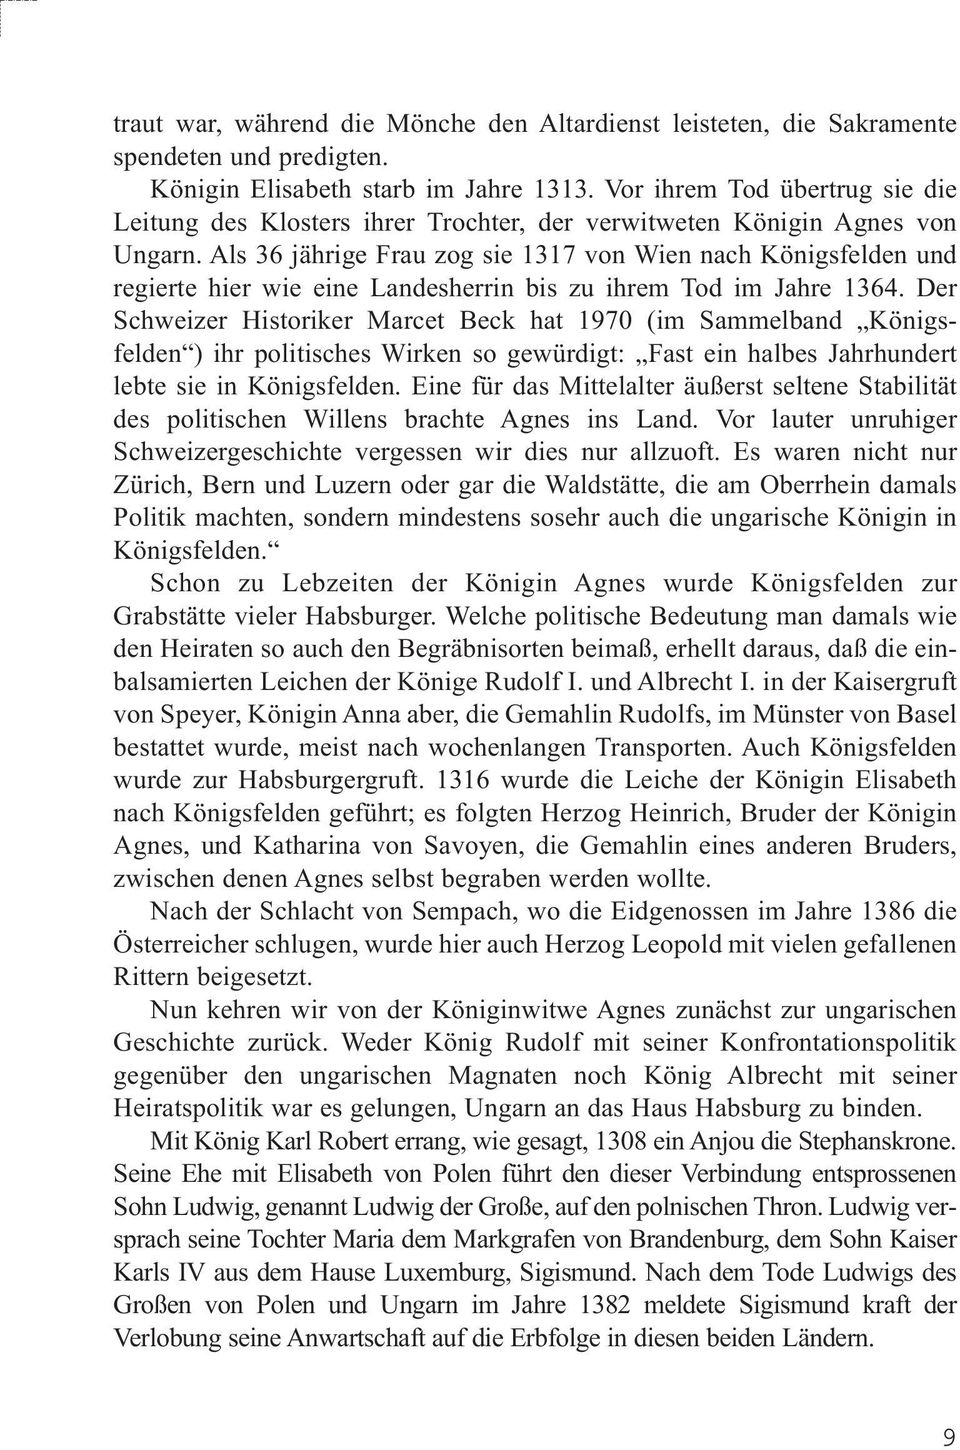 Als 36 jährige Frau zog sie 1317 von Wien nach Königsfelden und regierte hier wie eine Landesherrin bis zu ihrem Tod im Jahre 1364.